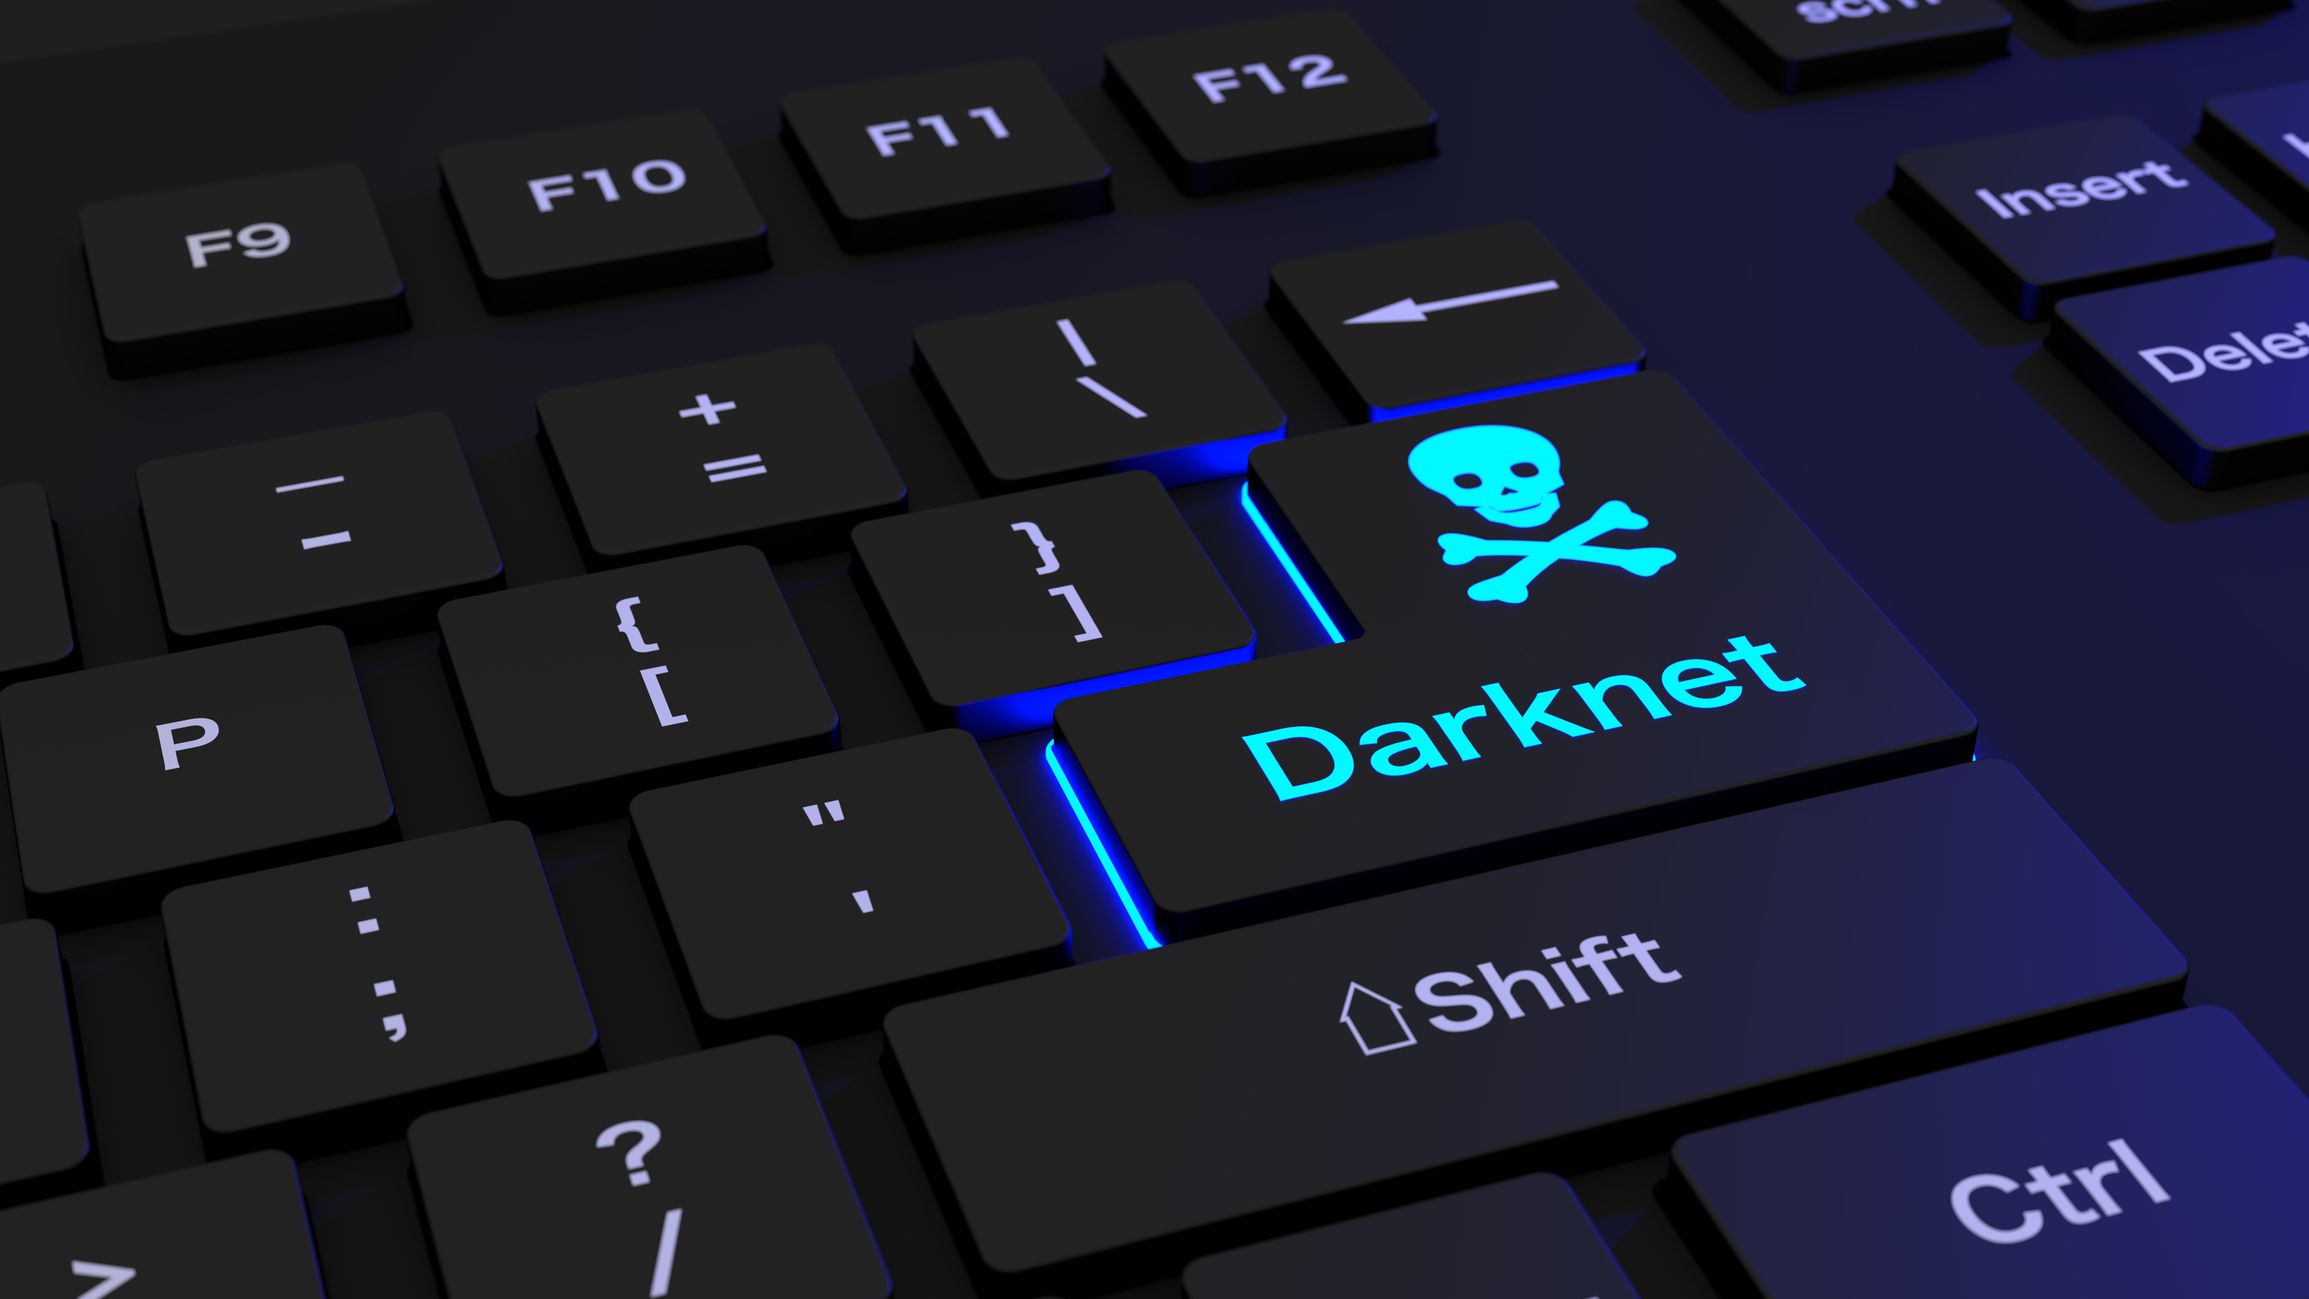 Darknet cobra mega вход tor browser как заблокировать mega